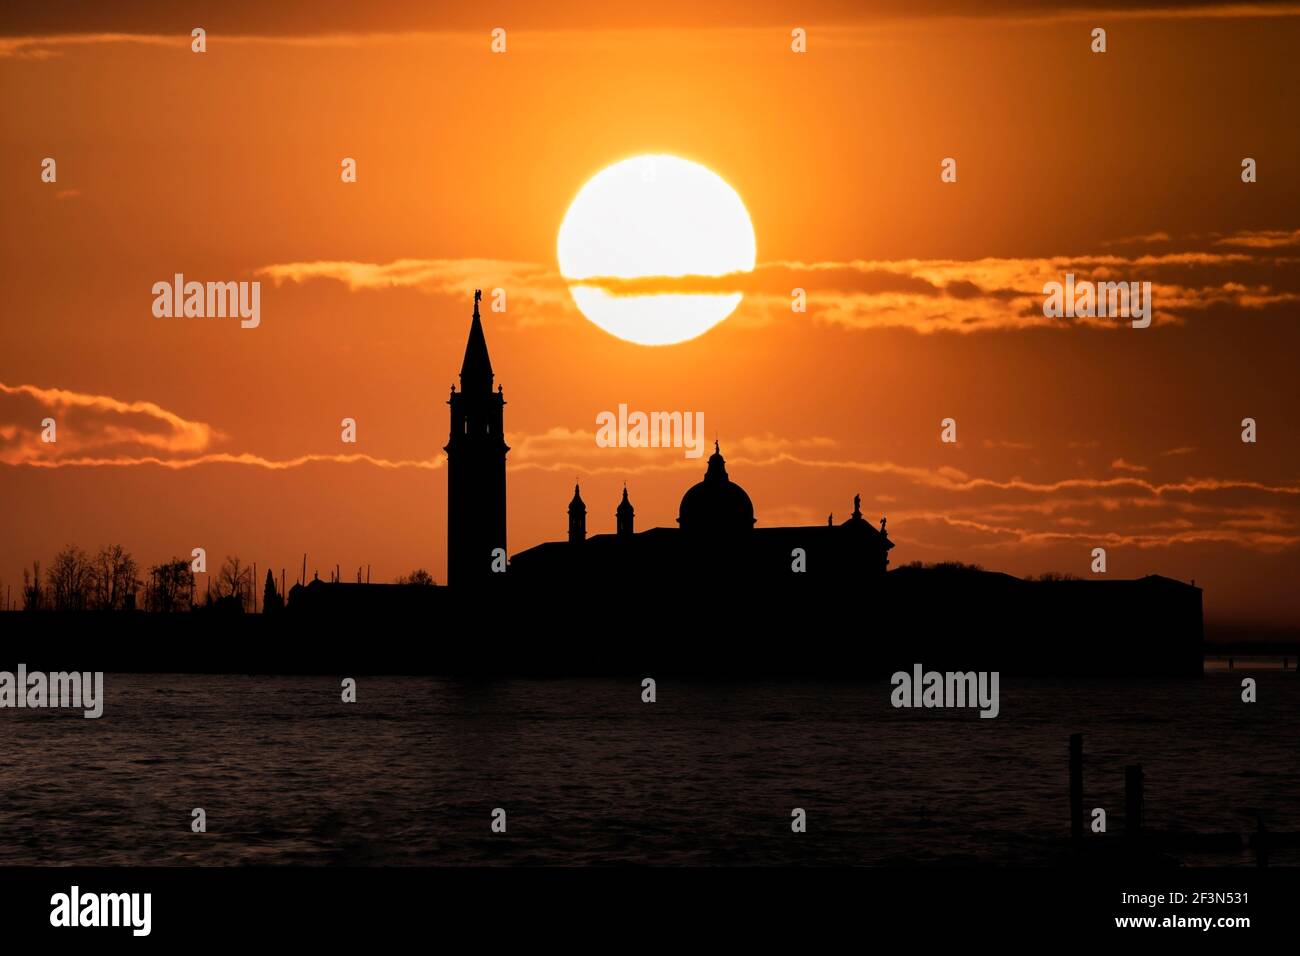 Church of San Giorgio Maggiore at sunset, Venice, Italy. Stock Photo